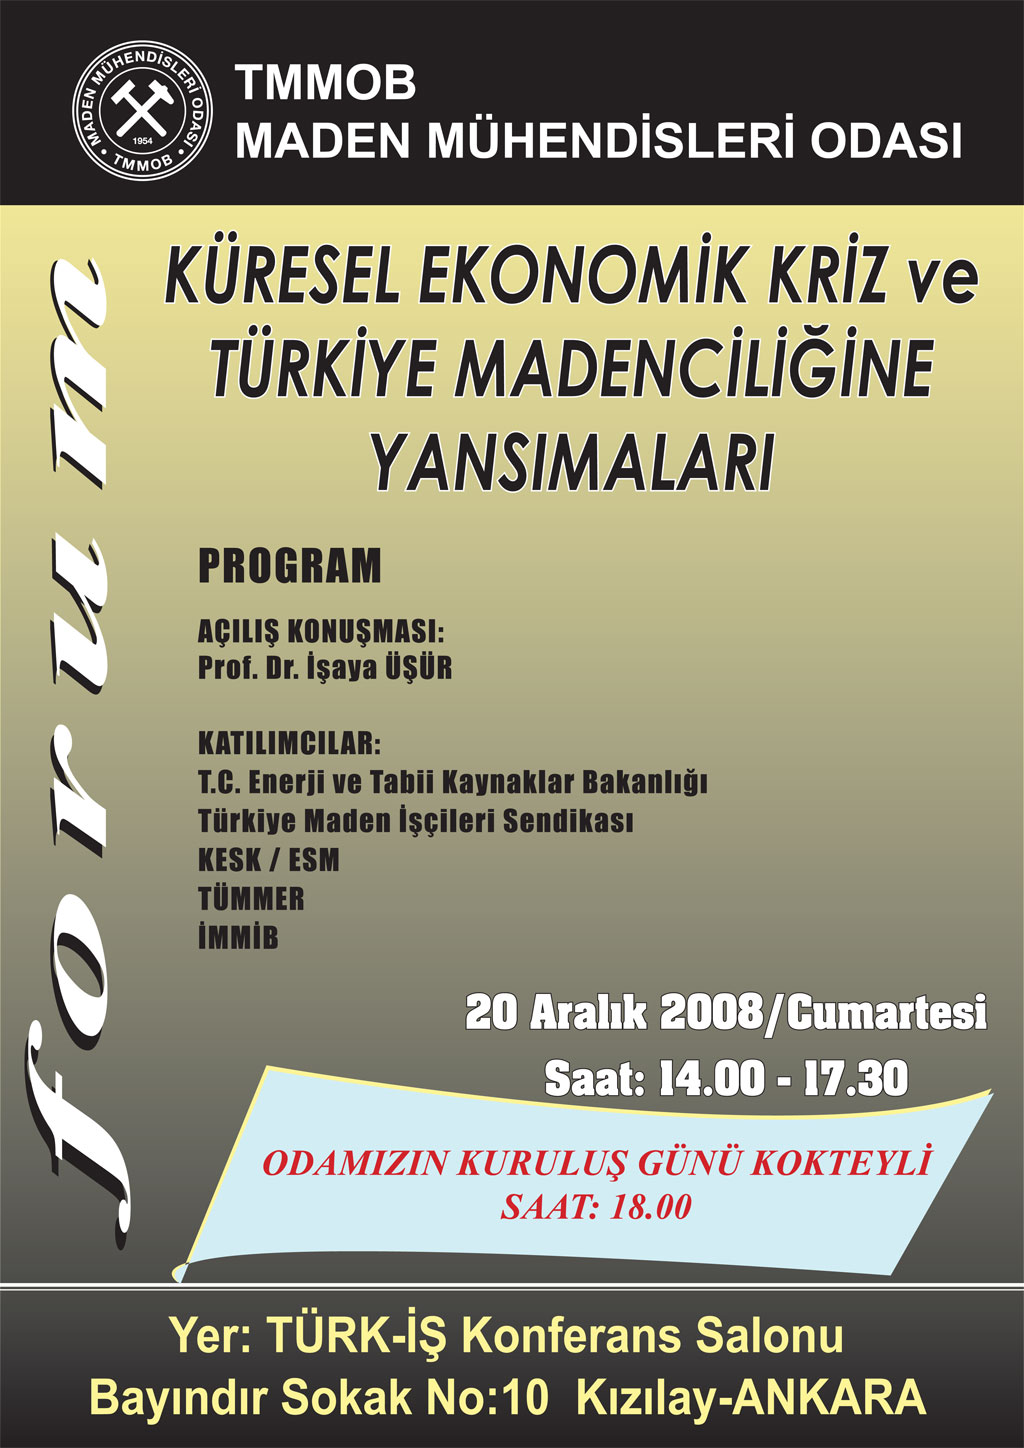 &#8220;Küresel Ekonomik Kriz Ve Türkiye Madenciliğine Yansımaları&#8221; konulu Forum Ve Odamız Kuruluş Günü Kokteyli 